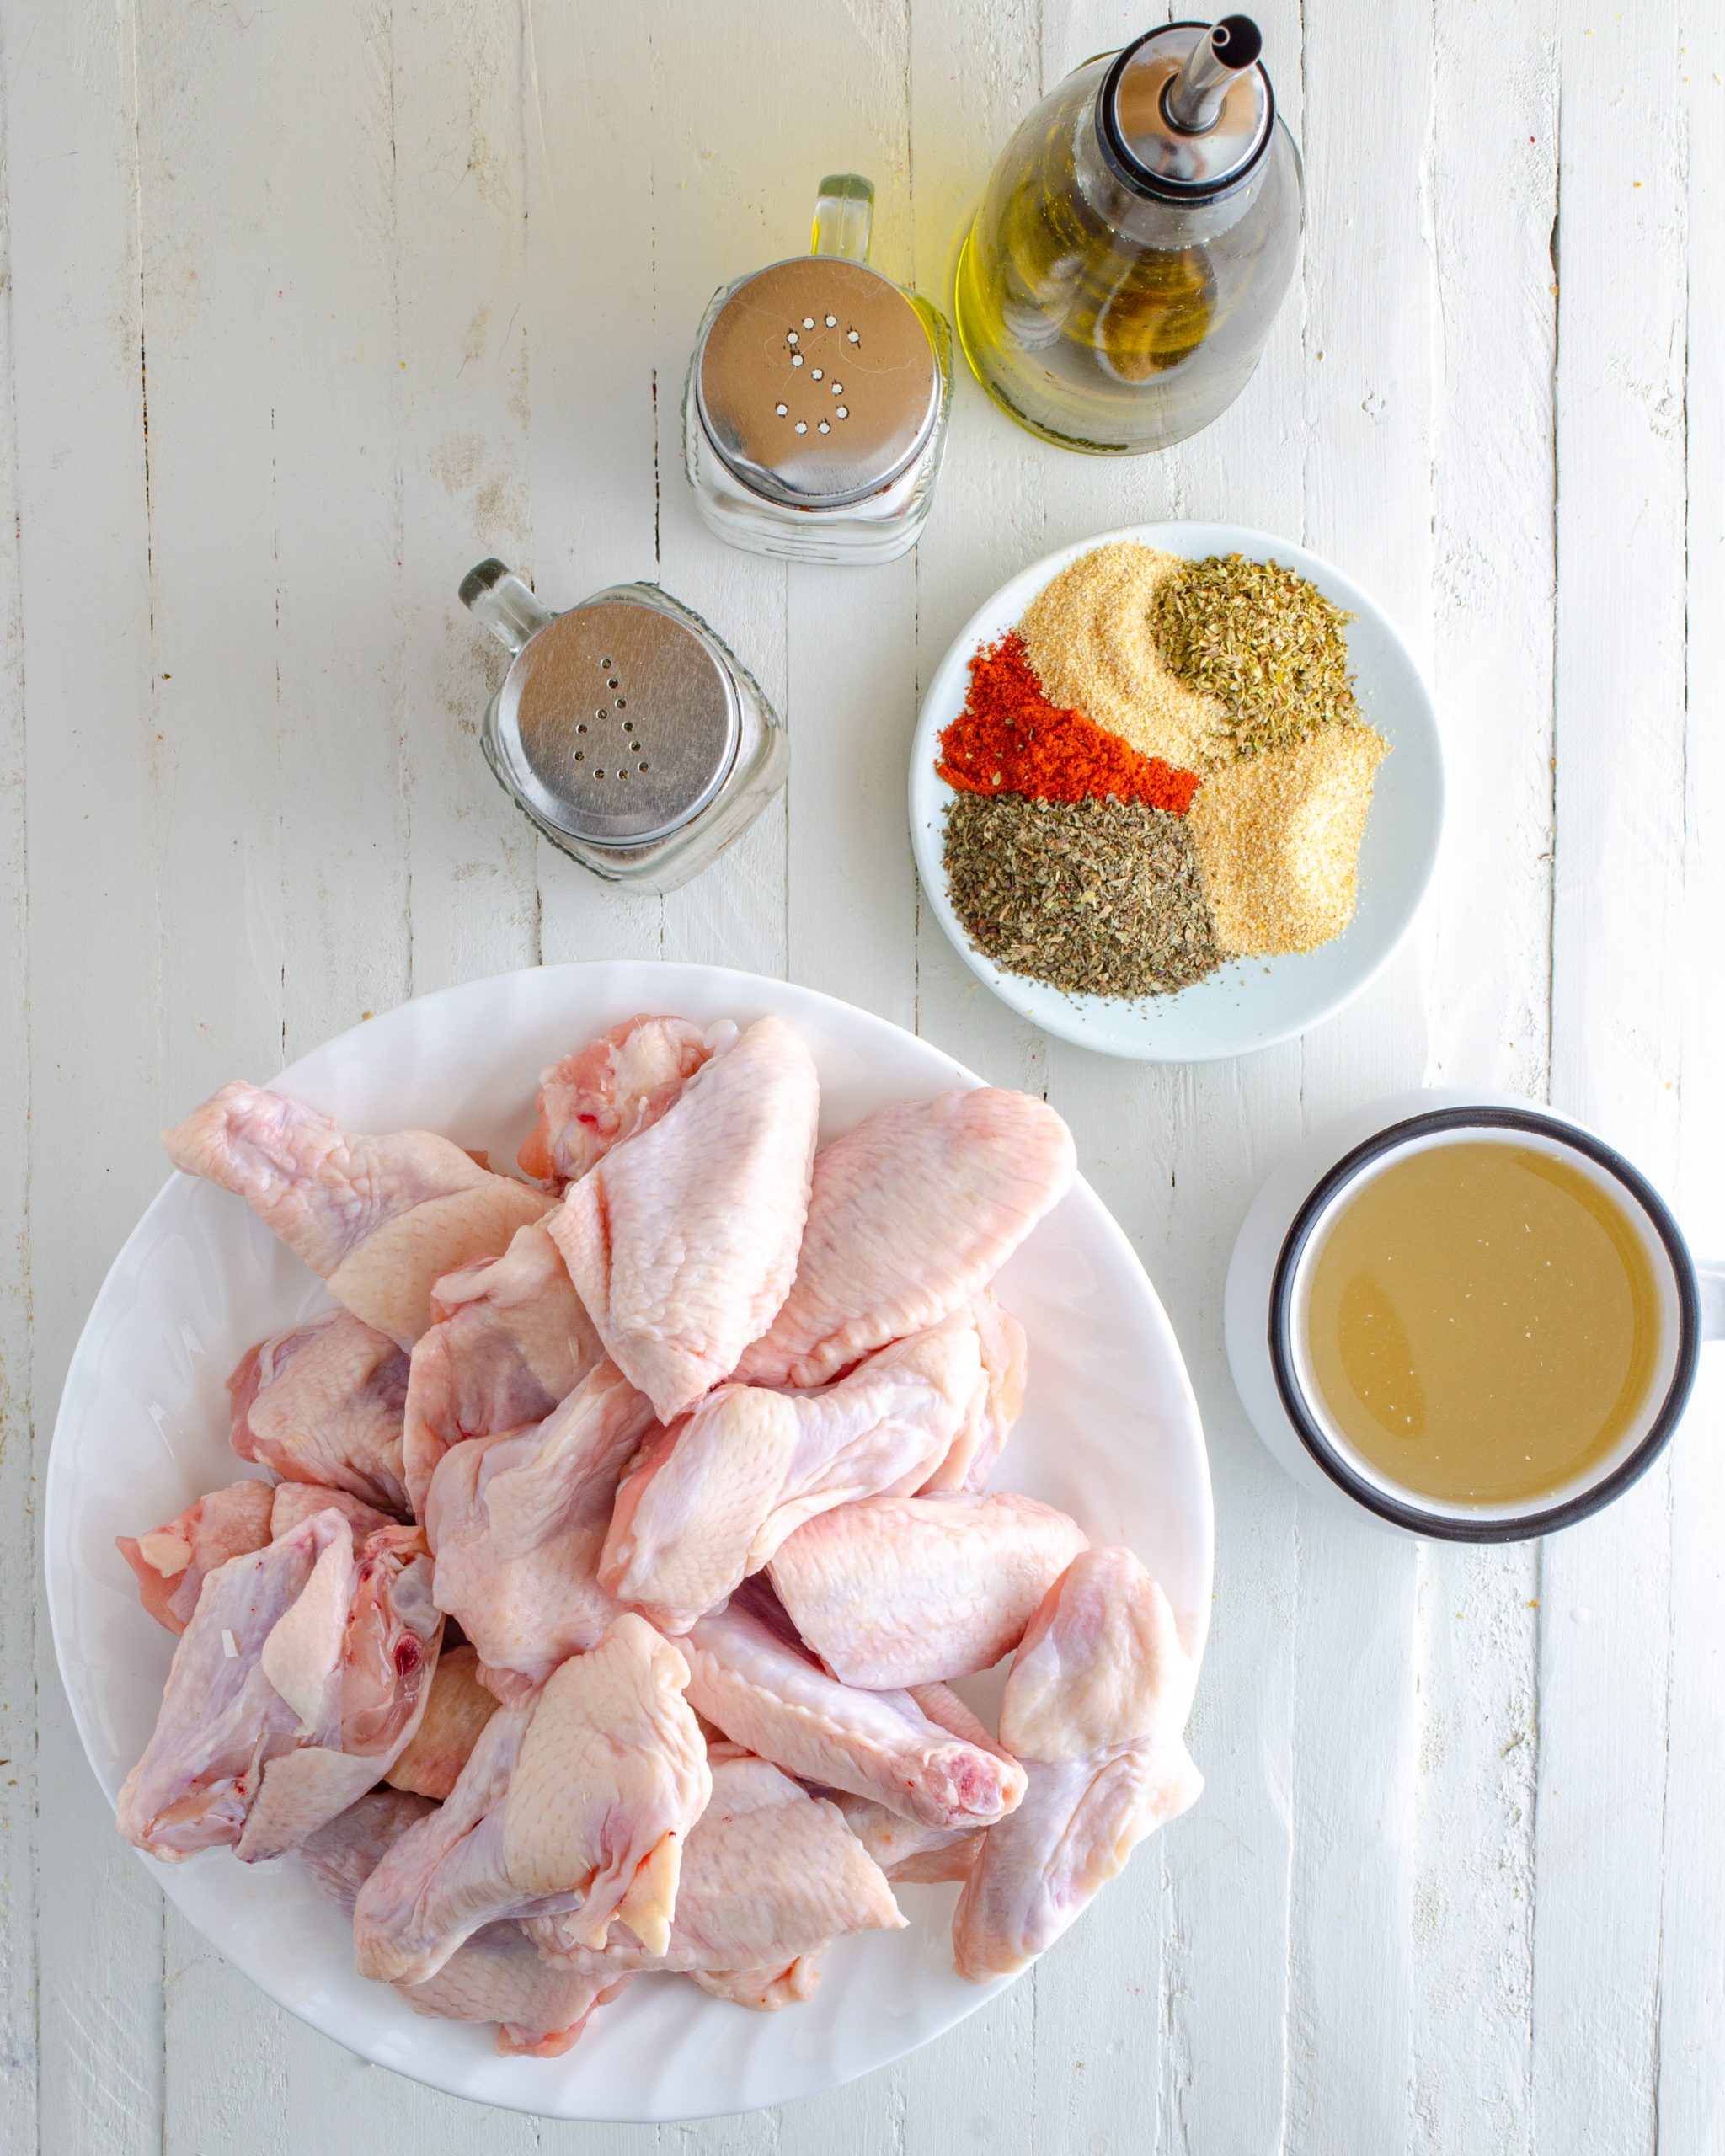 baked turkey wings ingredients